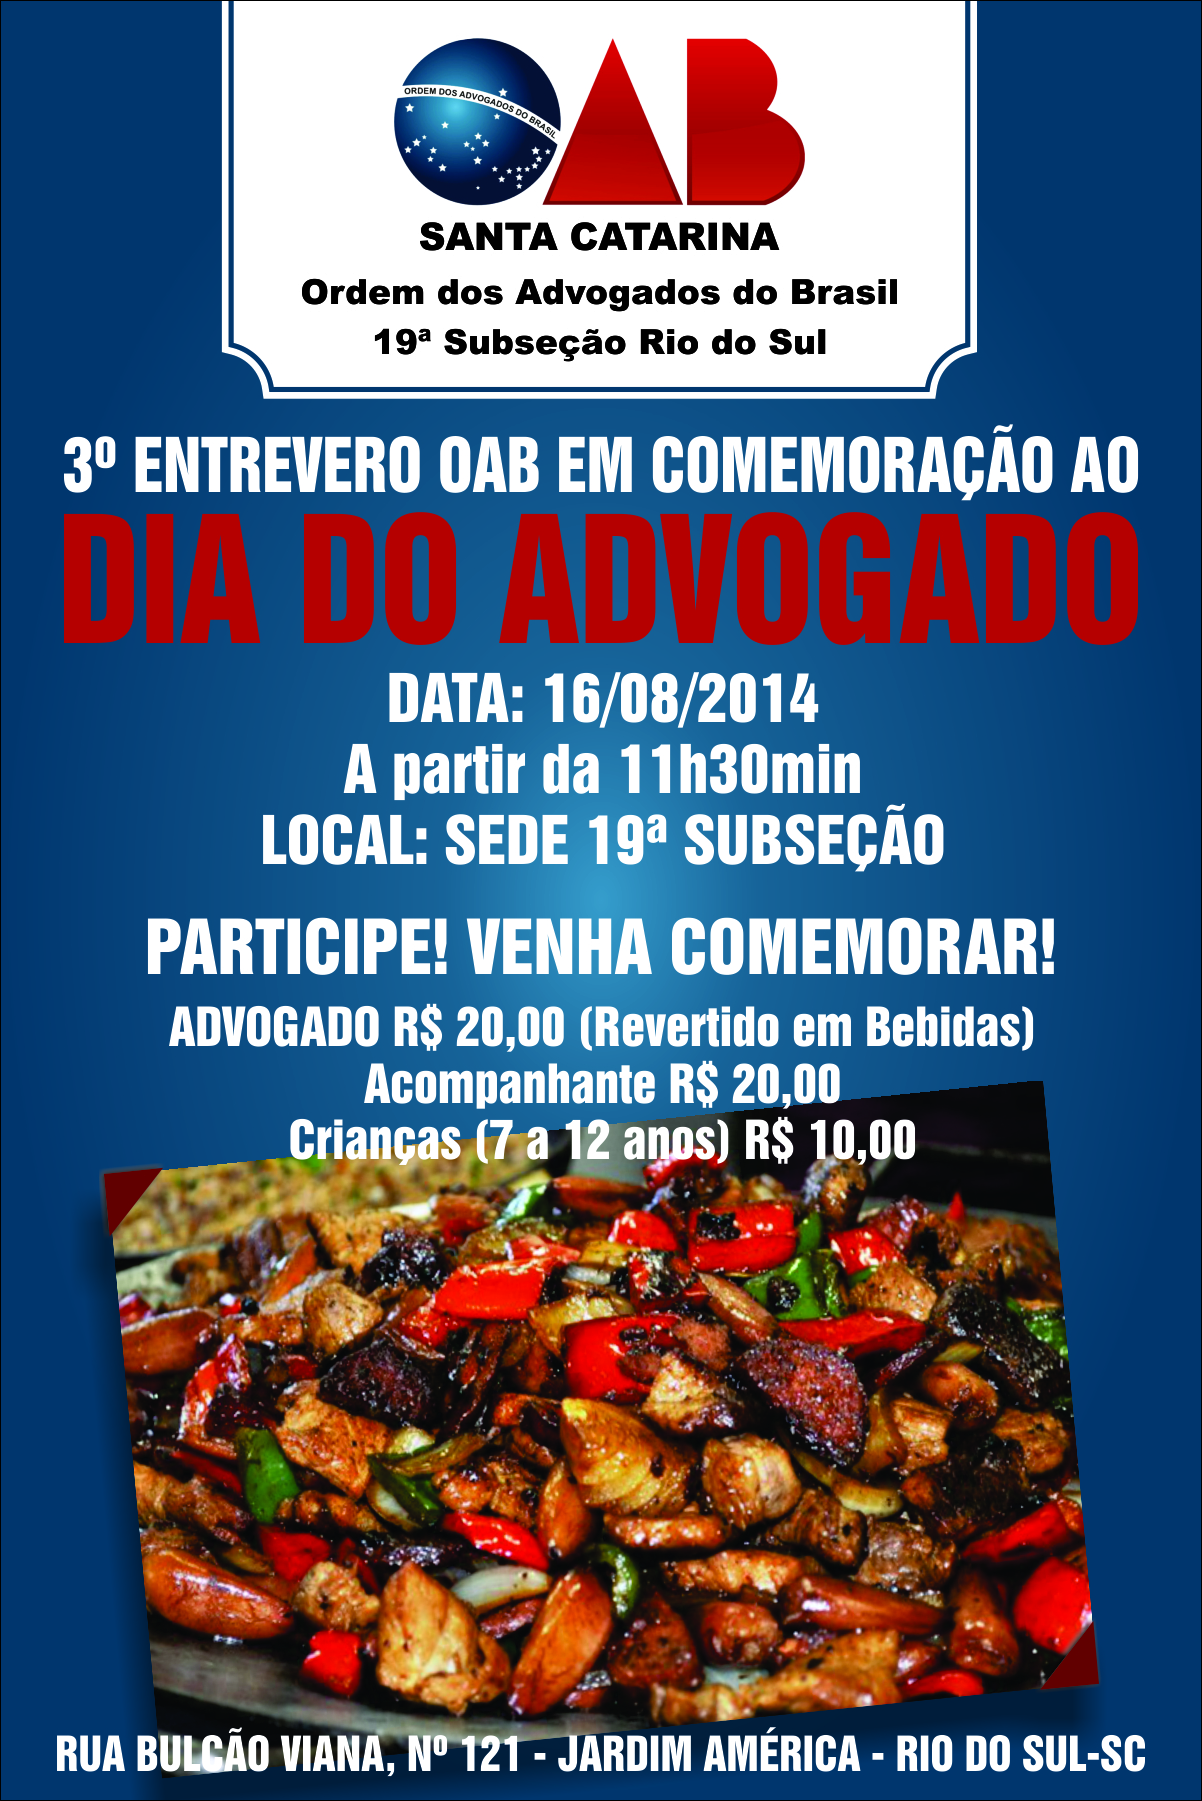 OAB Rio do Sul - Cartaz - 23072013